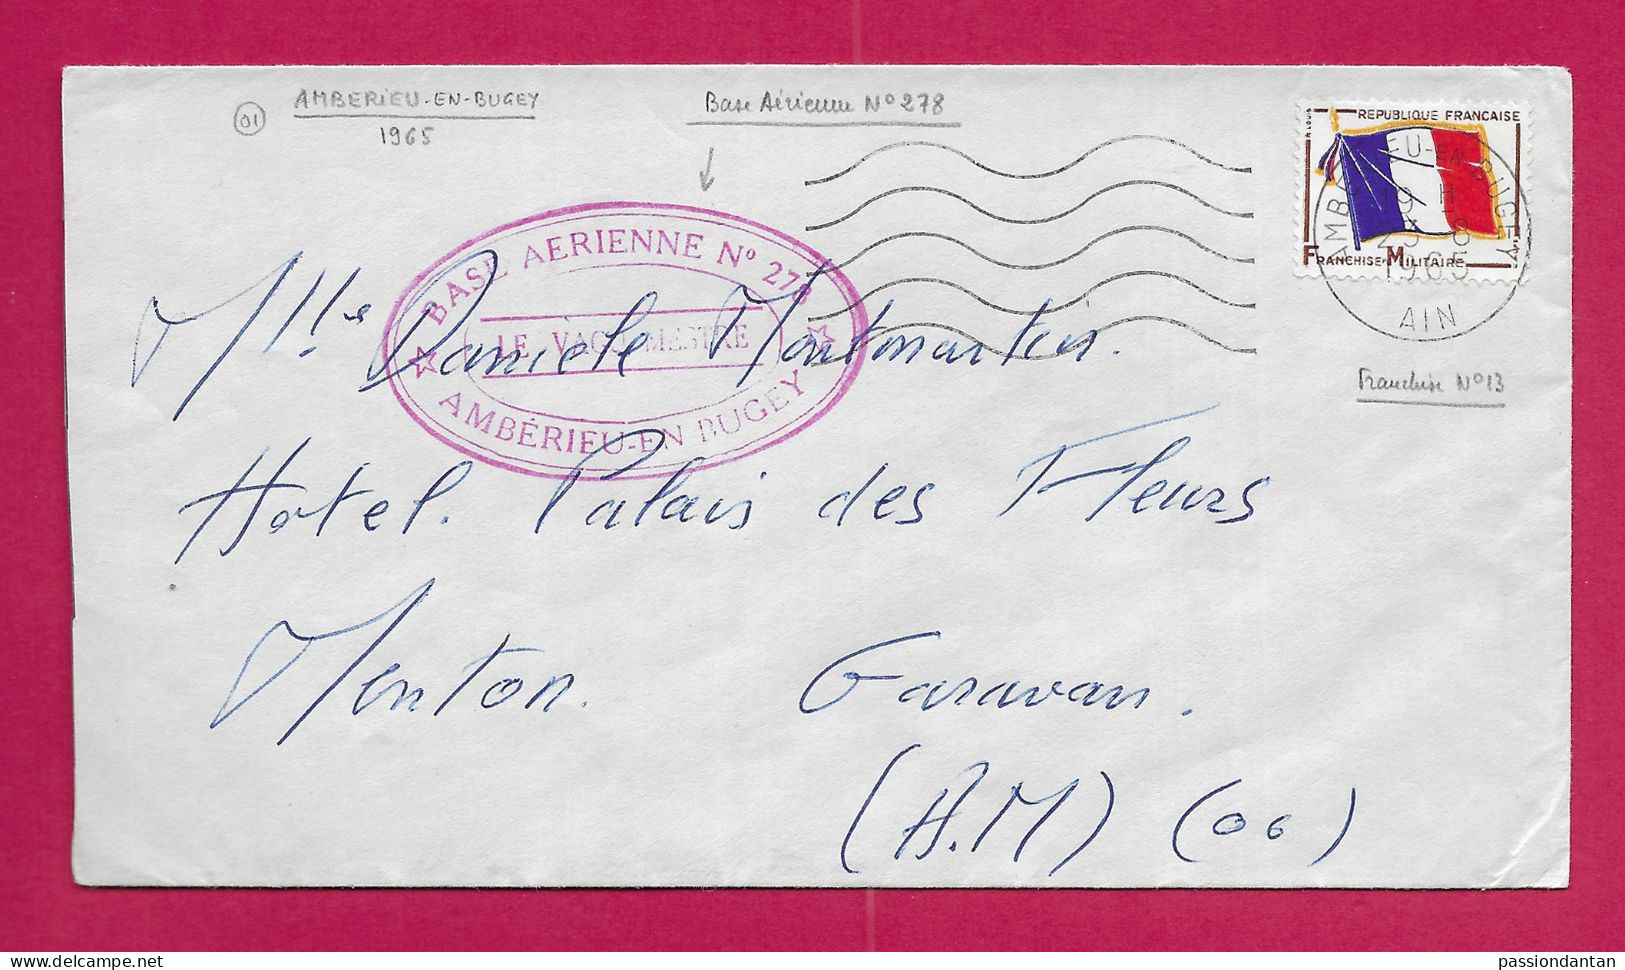 Enveloppe Datée De 1965 - Timbre Humide Base Aérienne N° 278 à Ambérieu En Bugey Dans L'Ain - Poste Aérienne Militaire